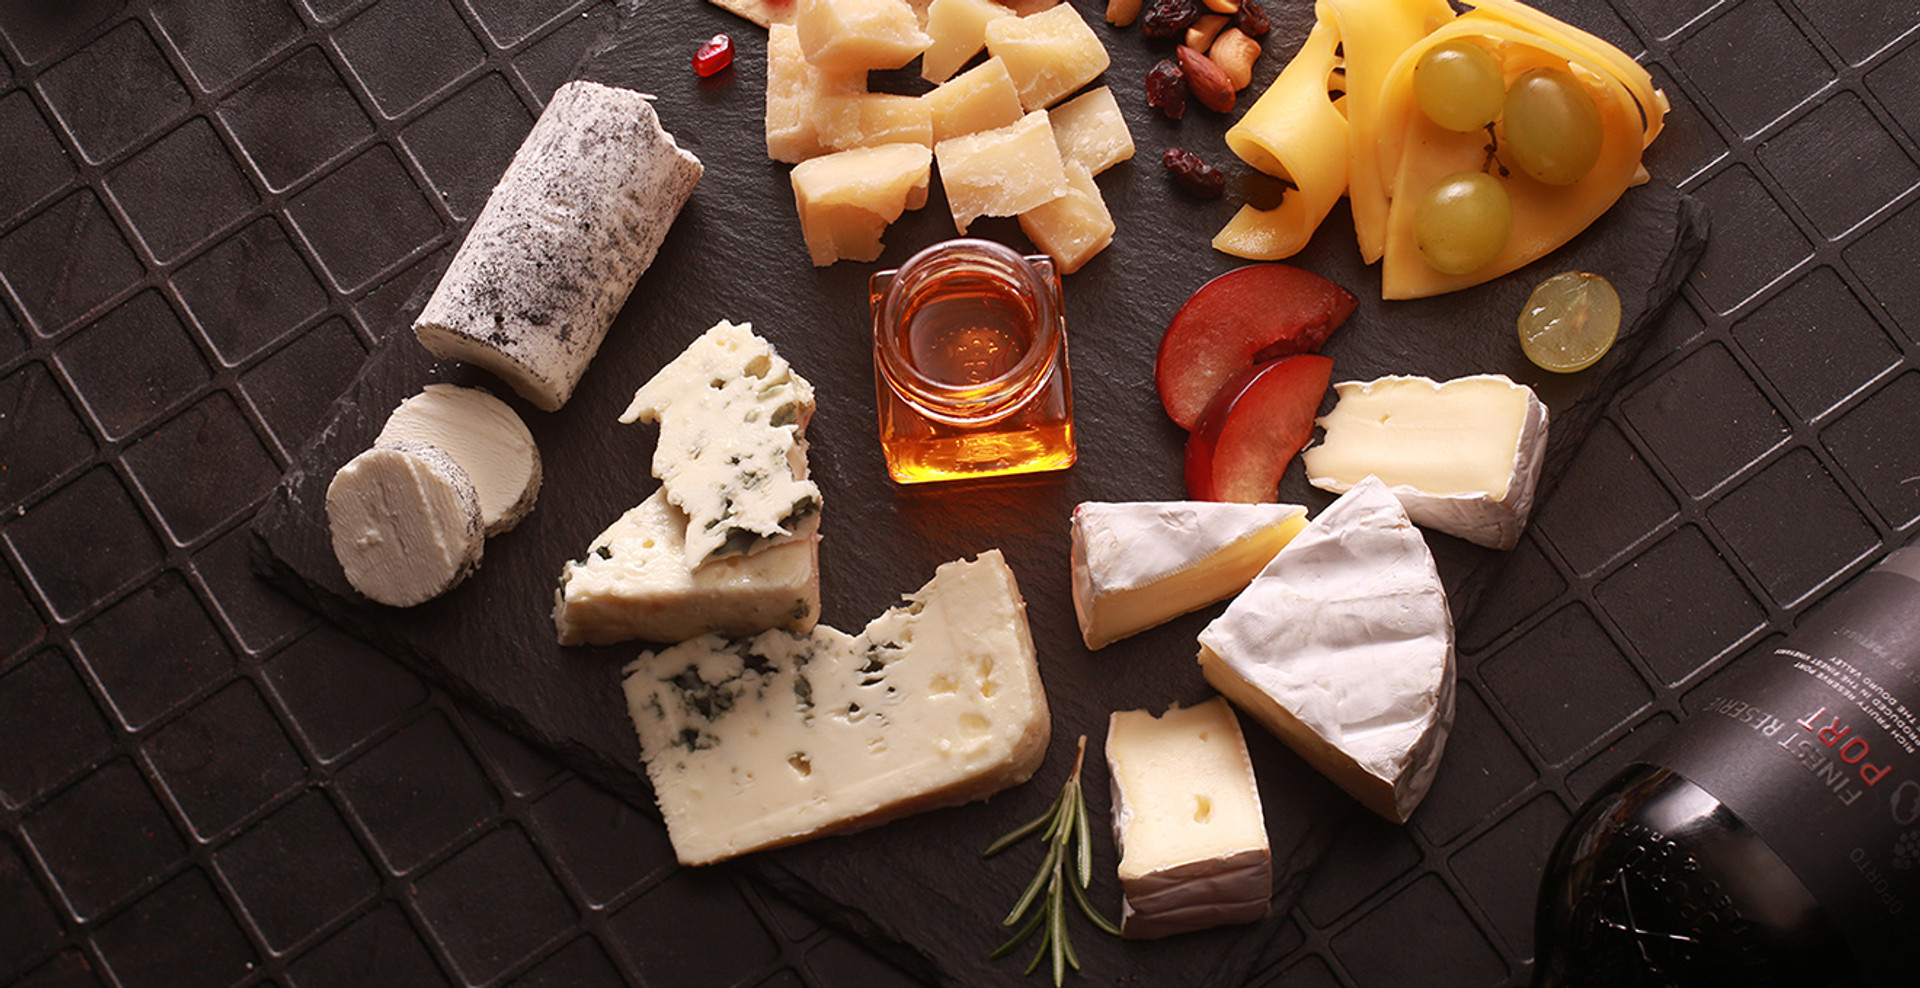 Як вибрати сир до смаку та з чим його їсти. Пояснює експерт